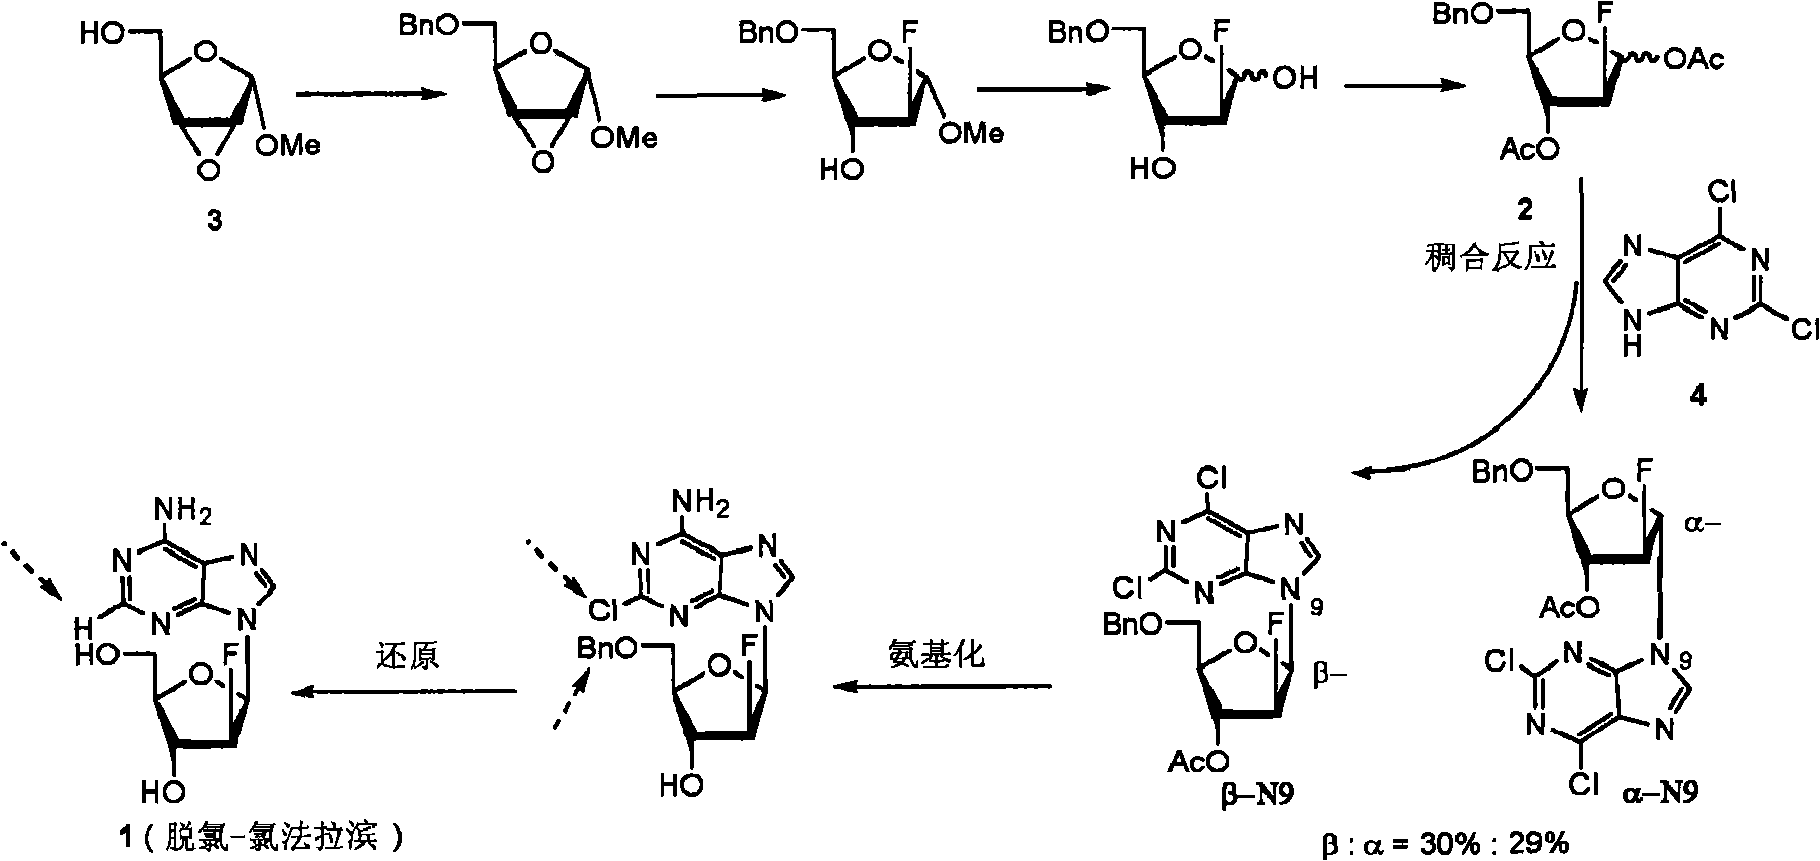 Preparation of 2-chloro-9-(2'-deoxy-2'-fluoro-beta-D-arabinofuranosyl)-adenine